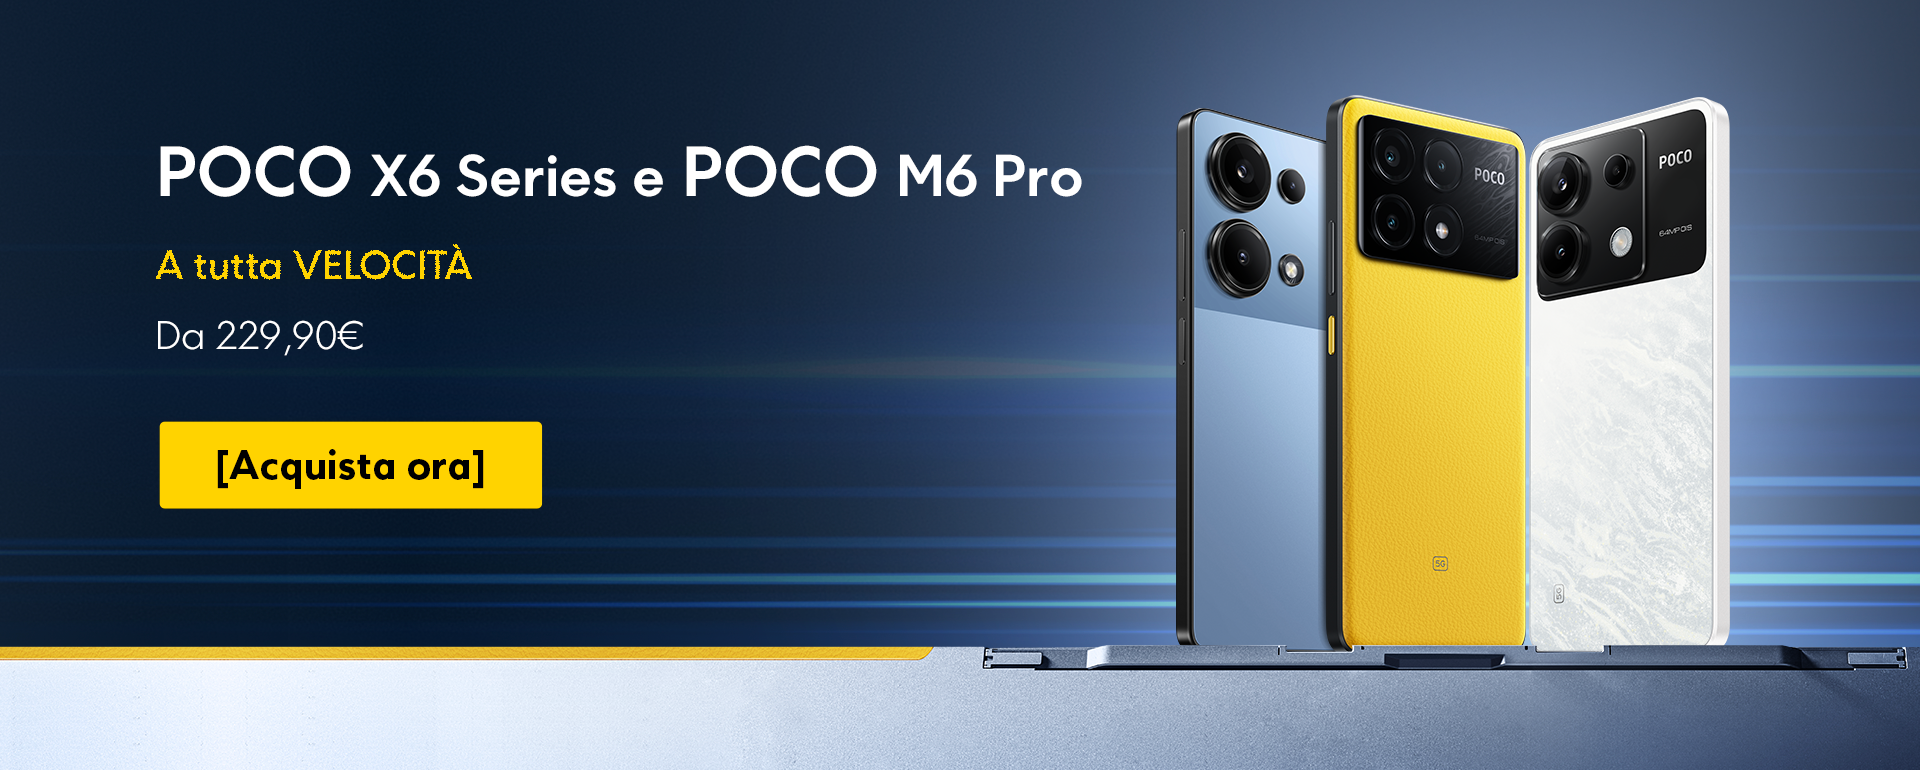 POCO X6 Series e POCO M6 Pro